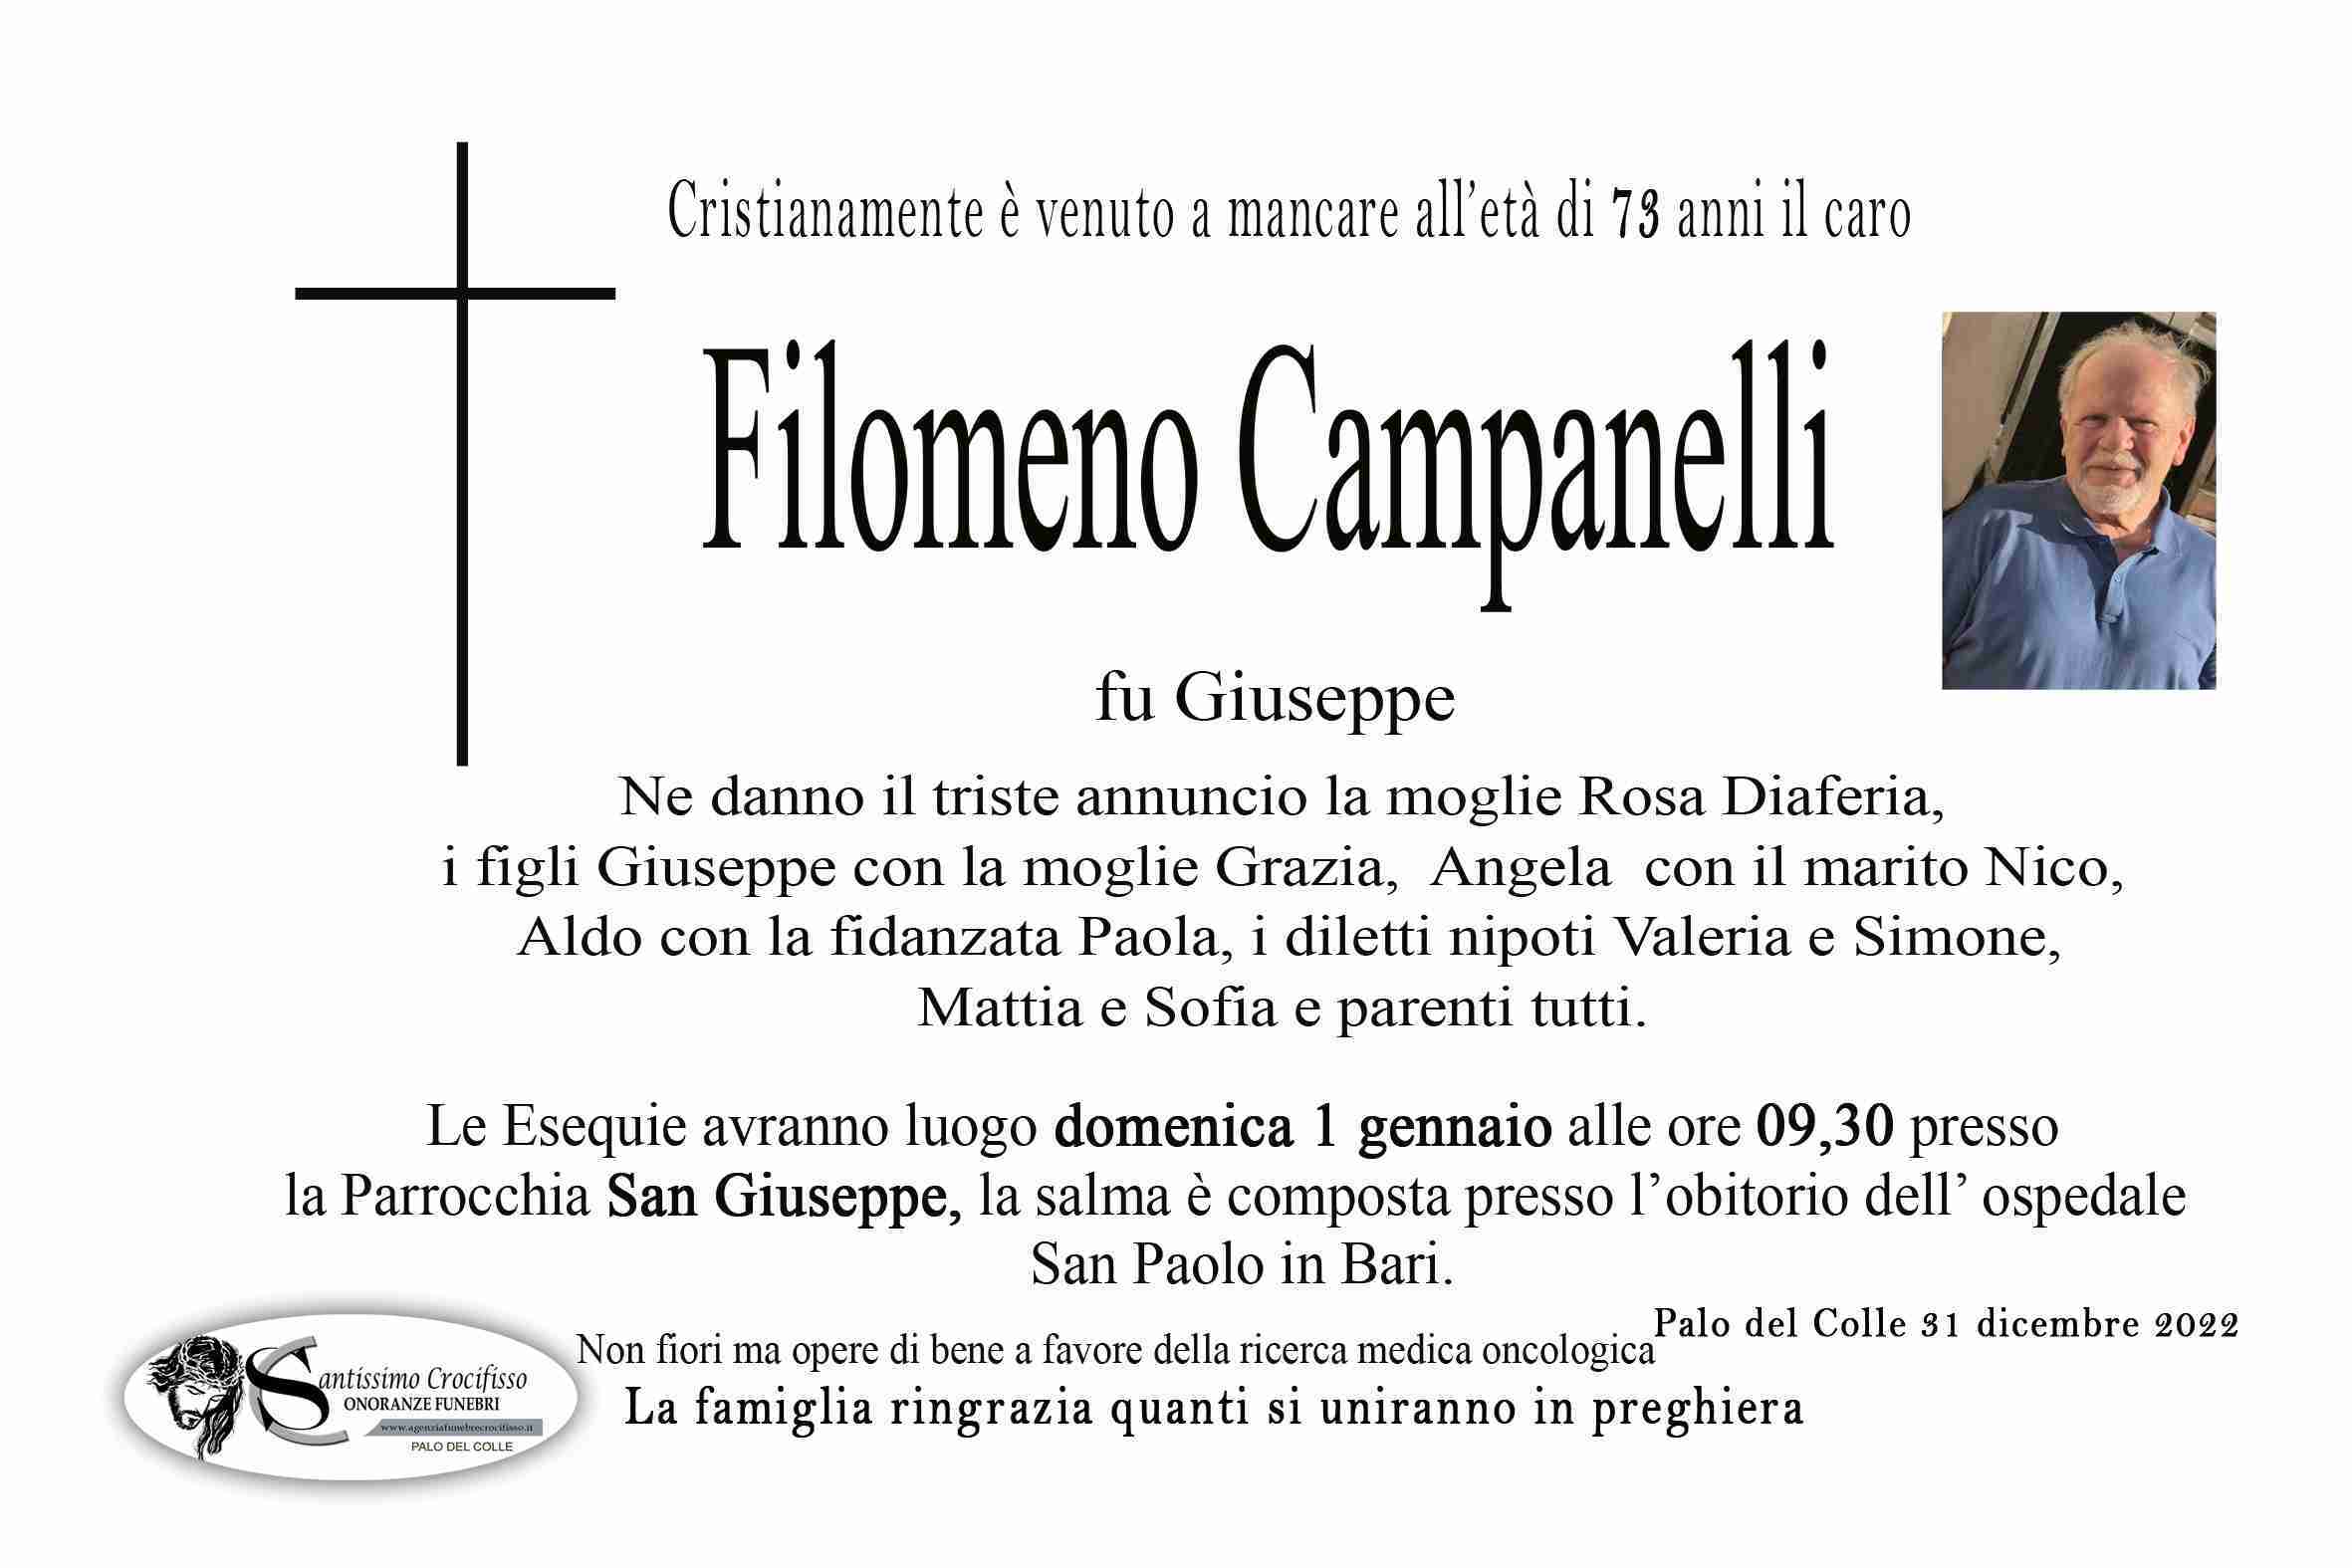 Filomeno Campanelli